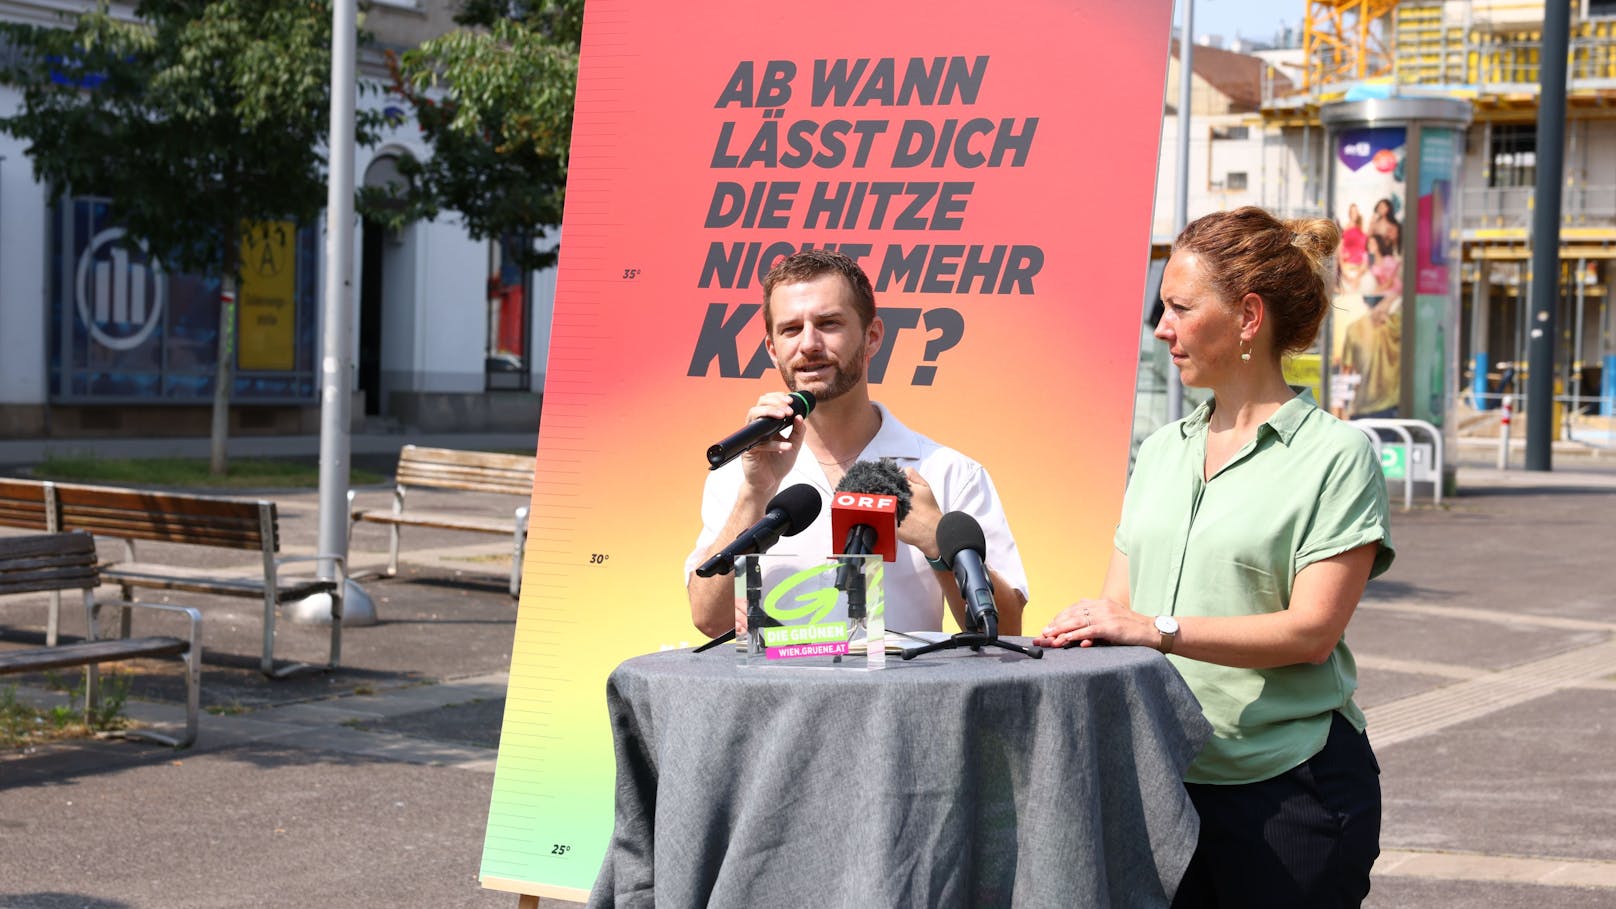 "Ab wann lässt dich die Hitze nicht mehr kalt?" - die Grünen-Kampagne geht bis August und stellt ein 8-Punkte-Plan vor, damit sich alle im Stadtgebiet Wien abkühlen können. Der Grünen-Parteivorsitzender Peter Kraus und die Grünen-Parteivorsitzende Judith Pühringer stellten den 8-Punkte-Plan am Dienstag vor.